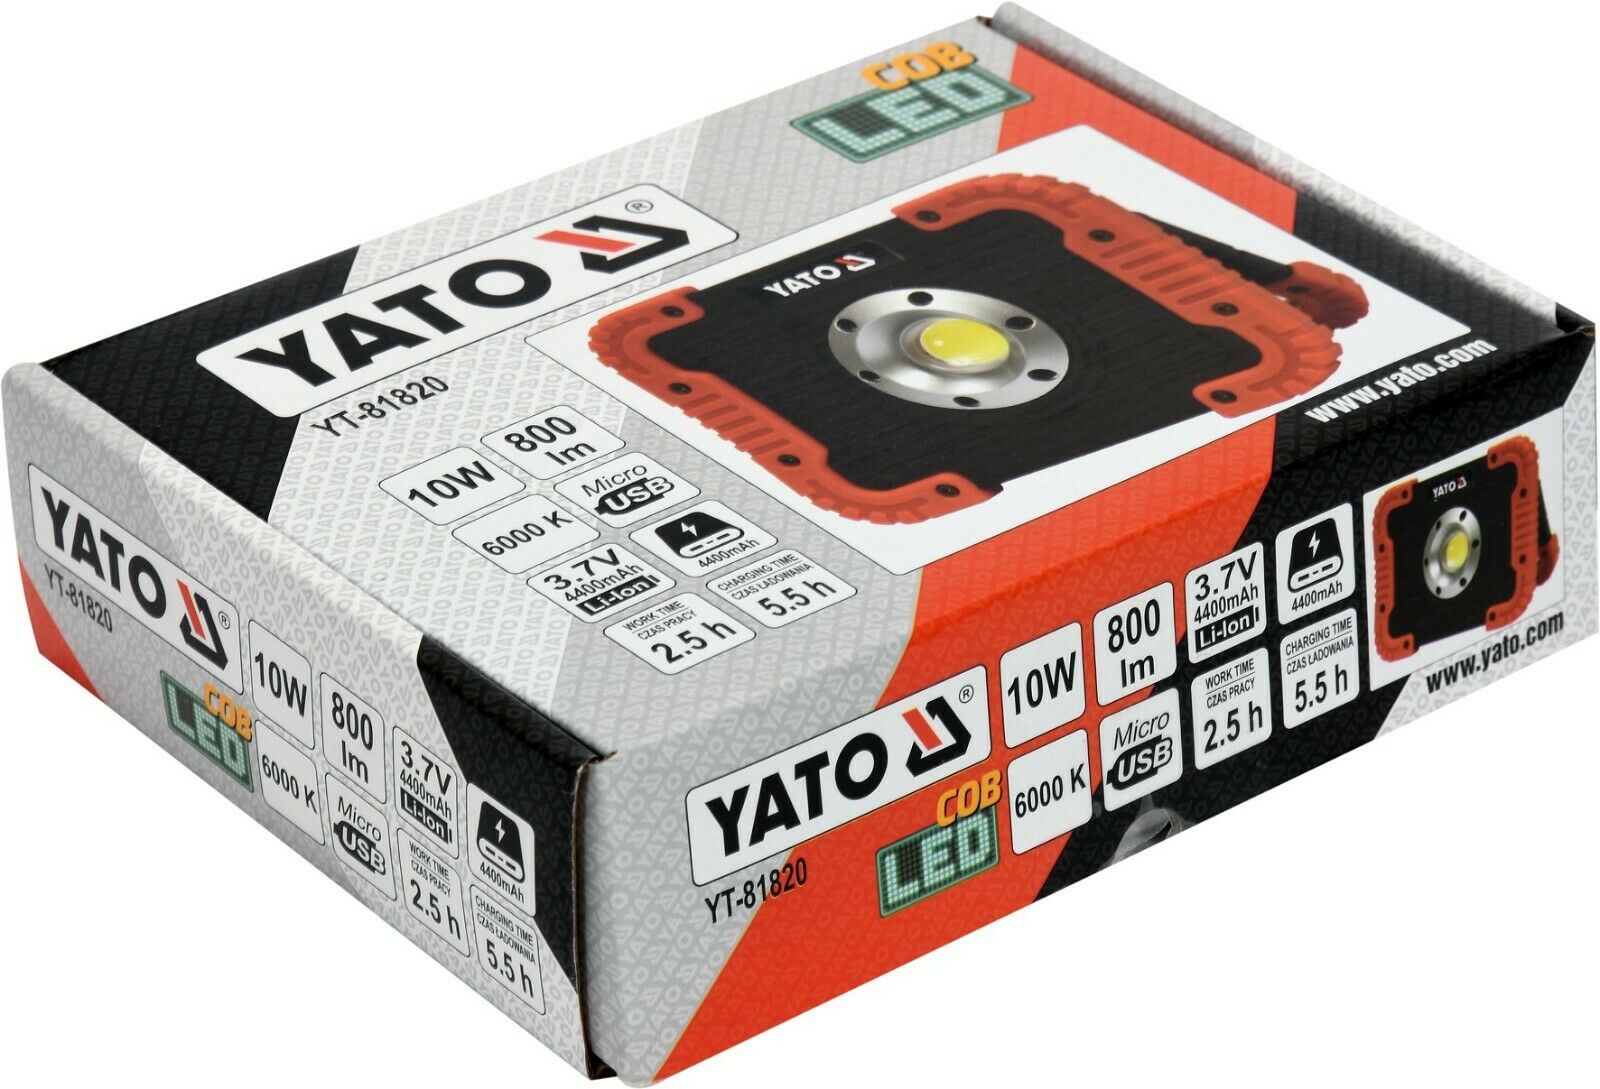 YATO LED Fluter Akku Strahler Scheinwerfer Arbeitsleuchte Werkstattlampe 800lm - Flex-Autoteile